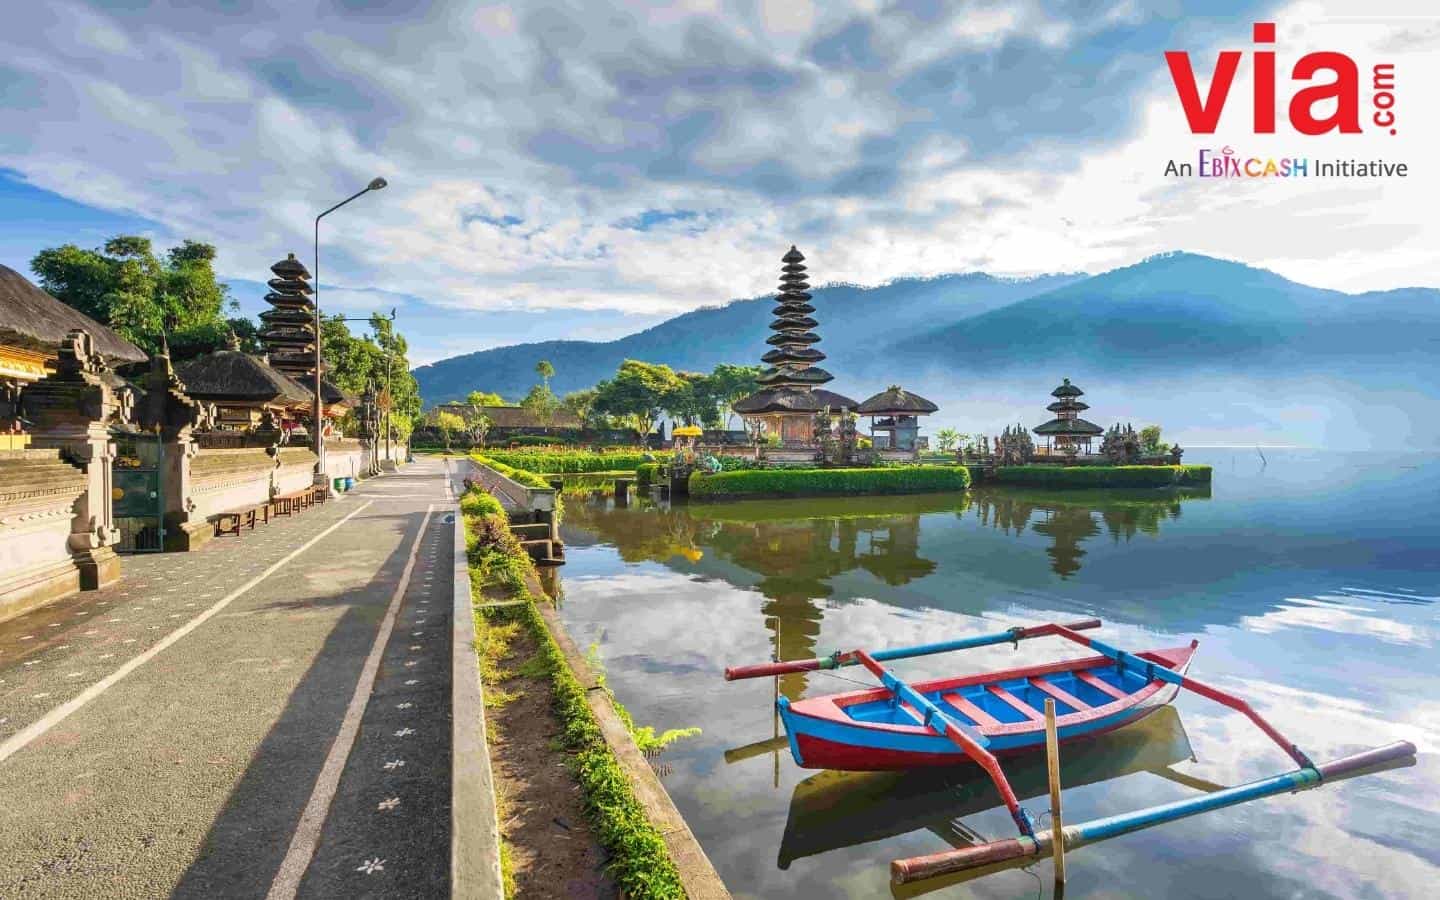 Baru Pertama kali Ke Bali? Kunjungi 6 Destinasi Ini